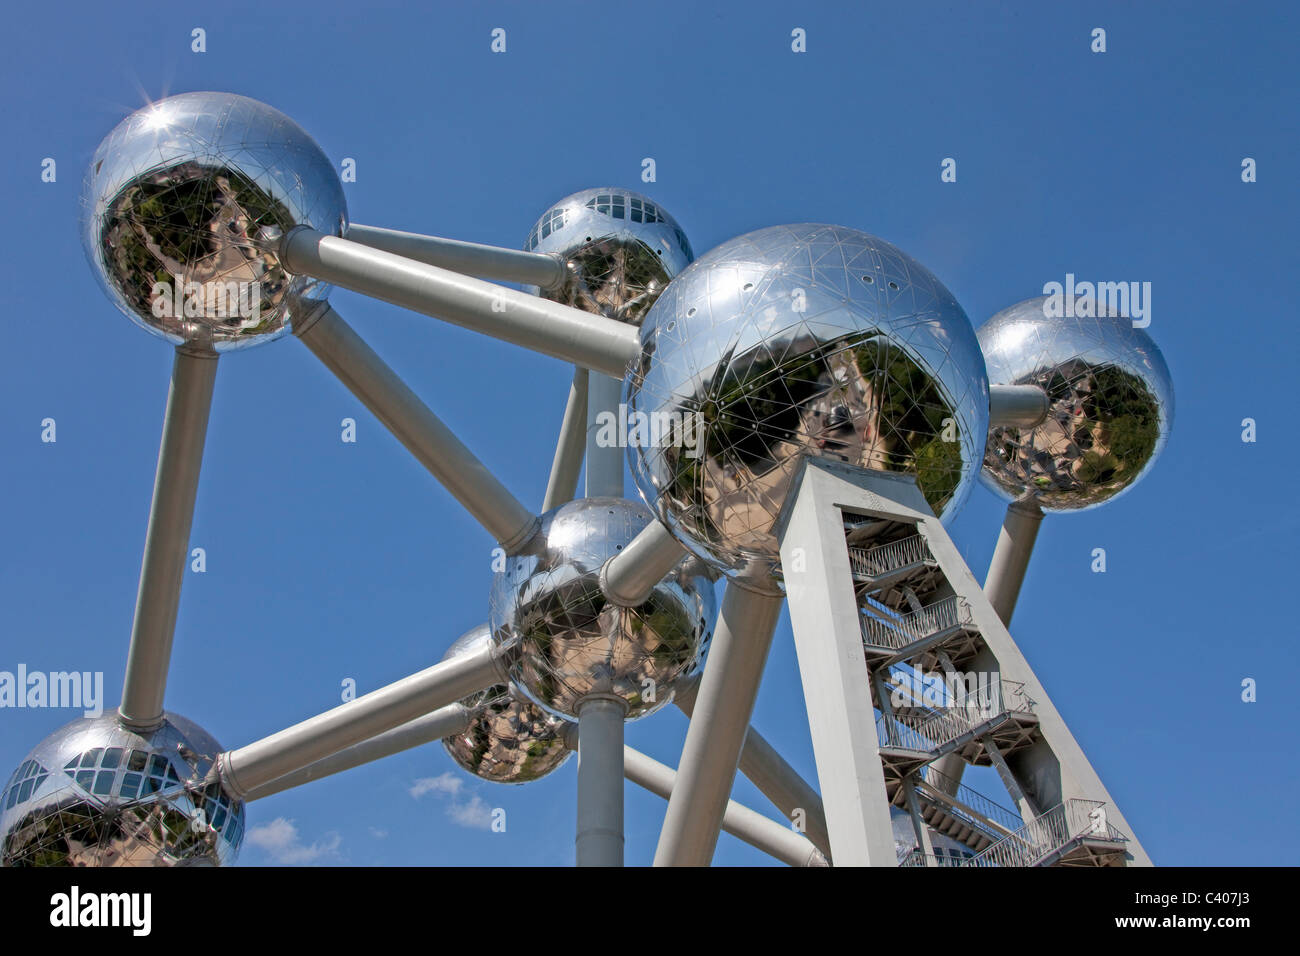 Belgium, Europe, Bruxelles, Brussels, Atomium, balls, sphere, architecture, around, building, construction, landmark Stock Photo